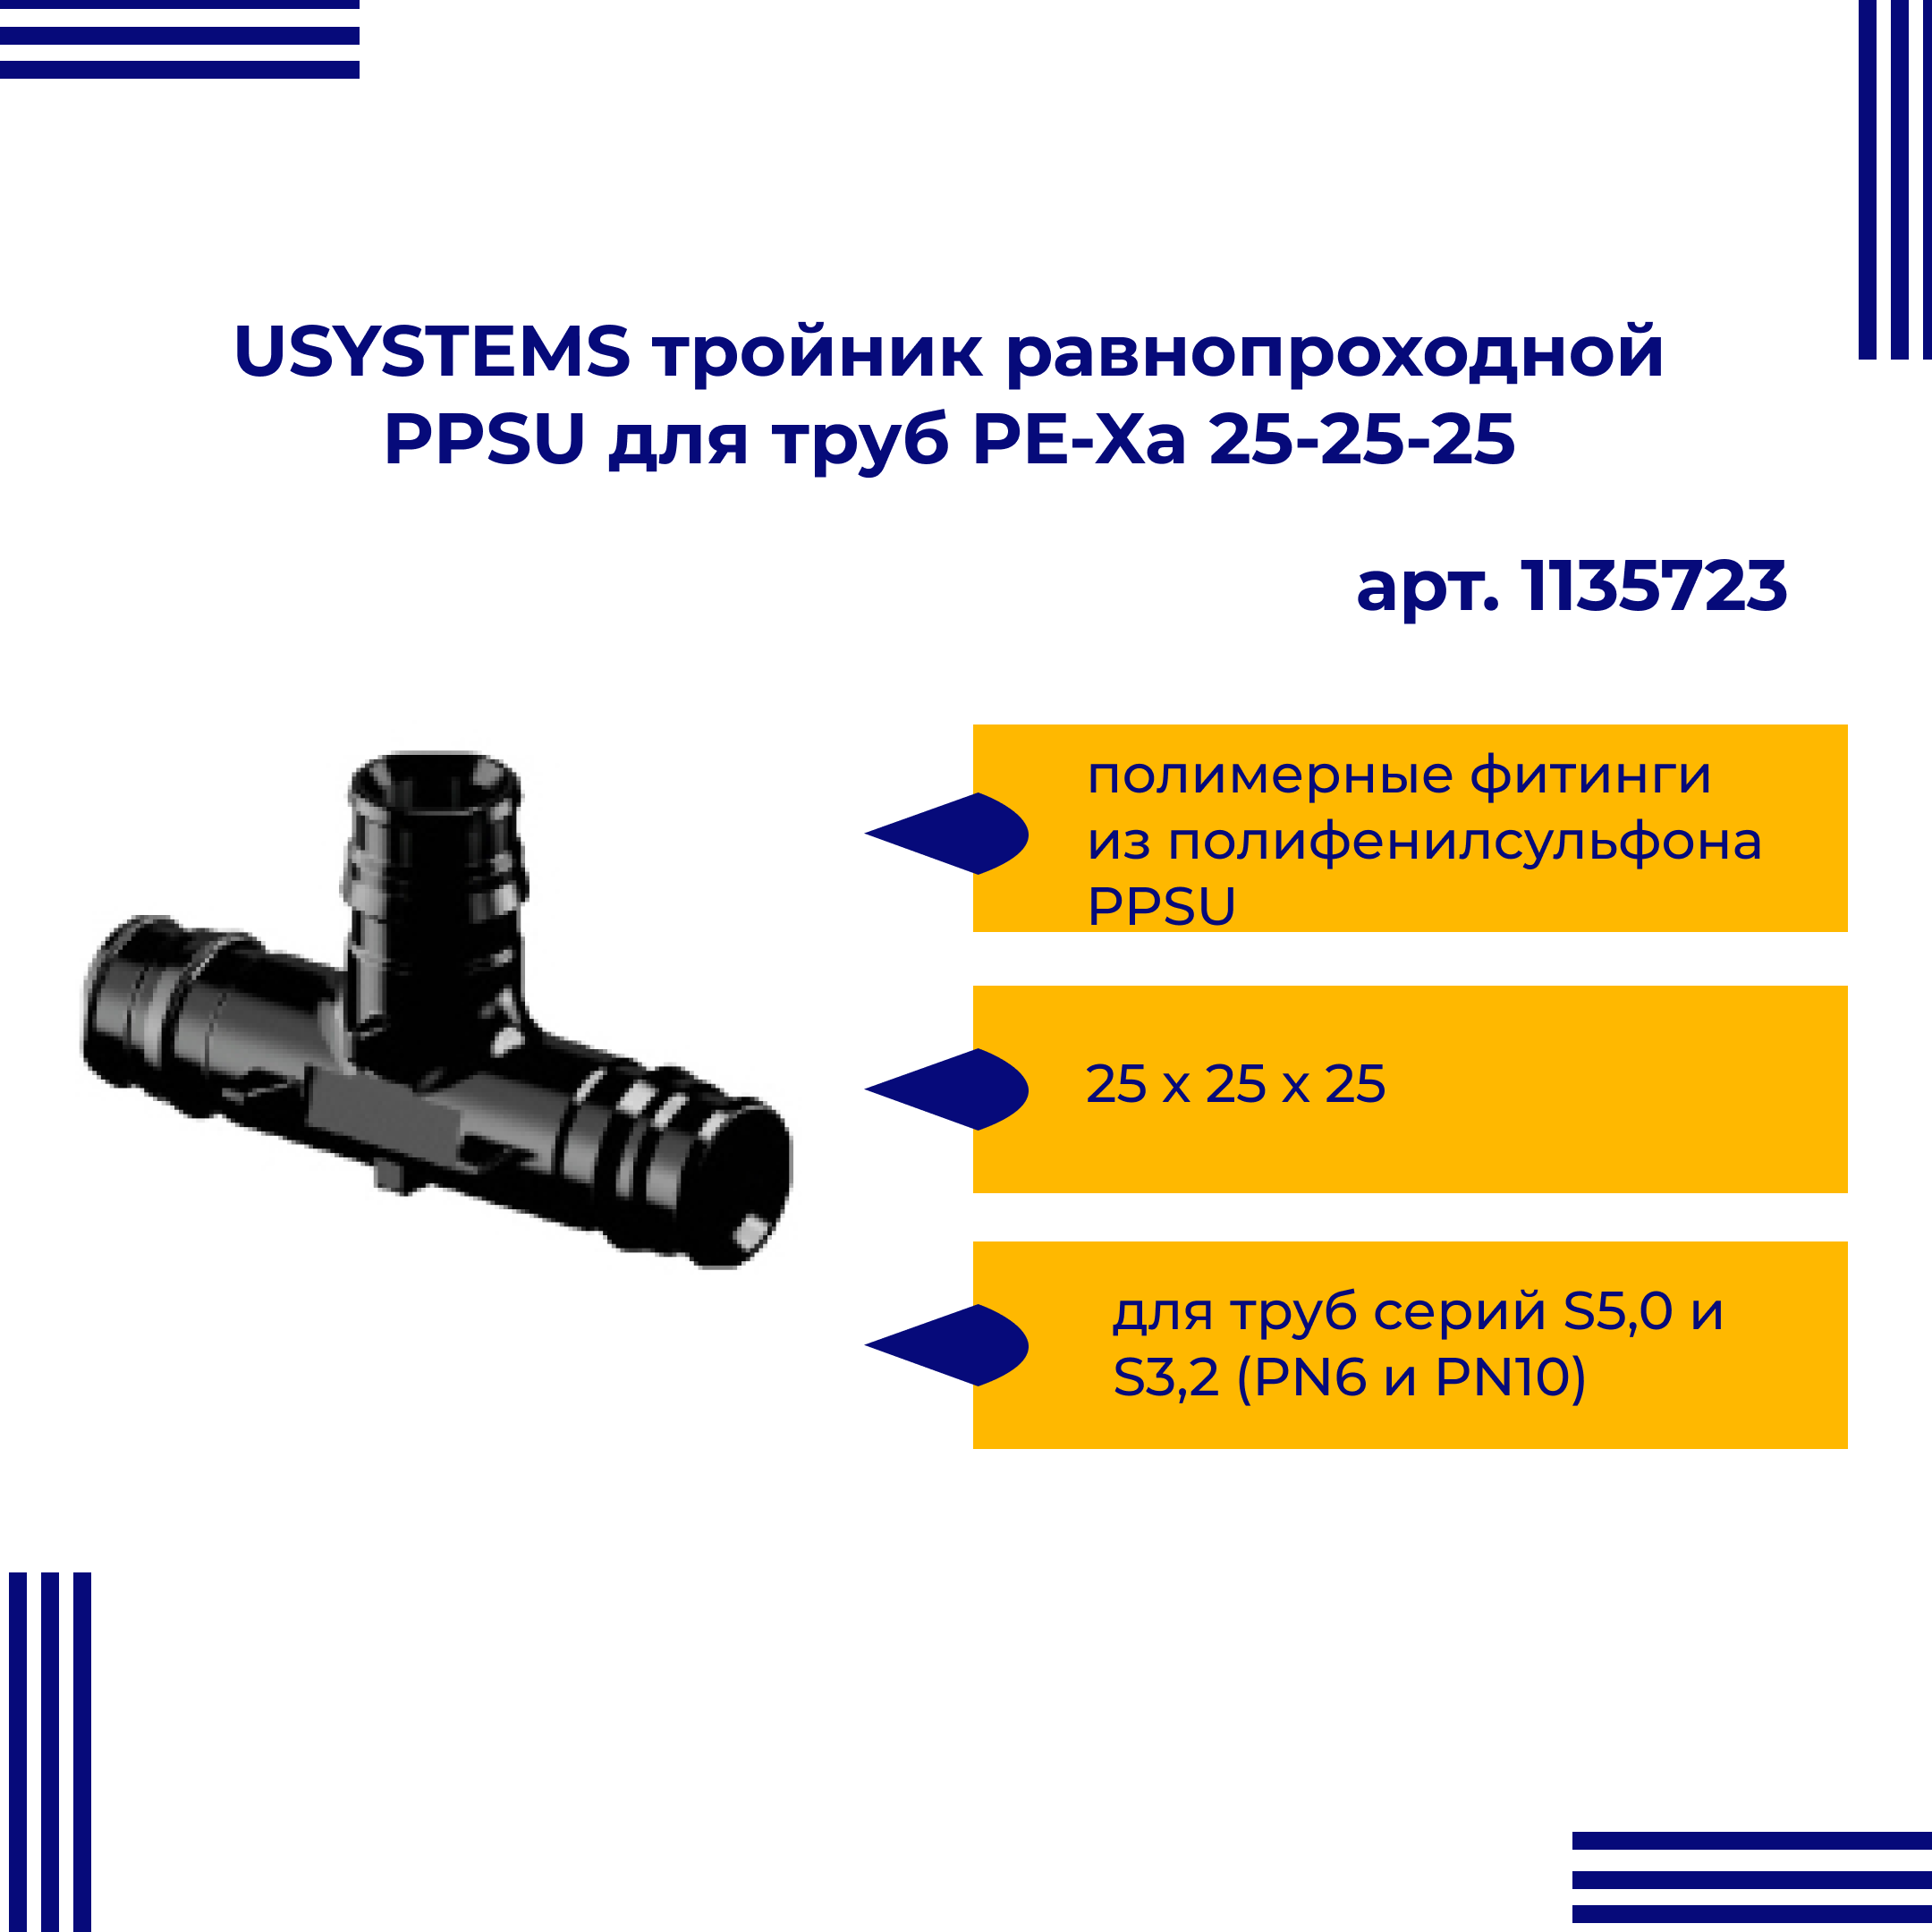 Тройник PPSU USYSTEMS 1135723 равнопроходной для труб PE-Xa 25-25-25